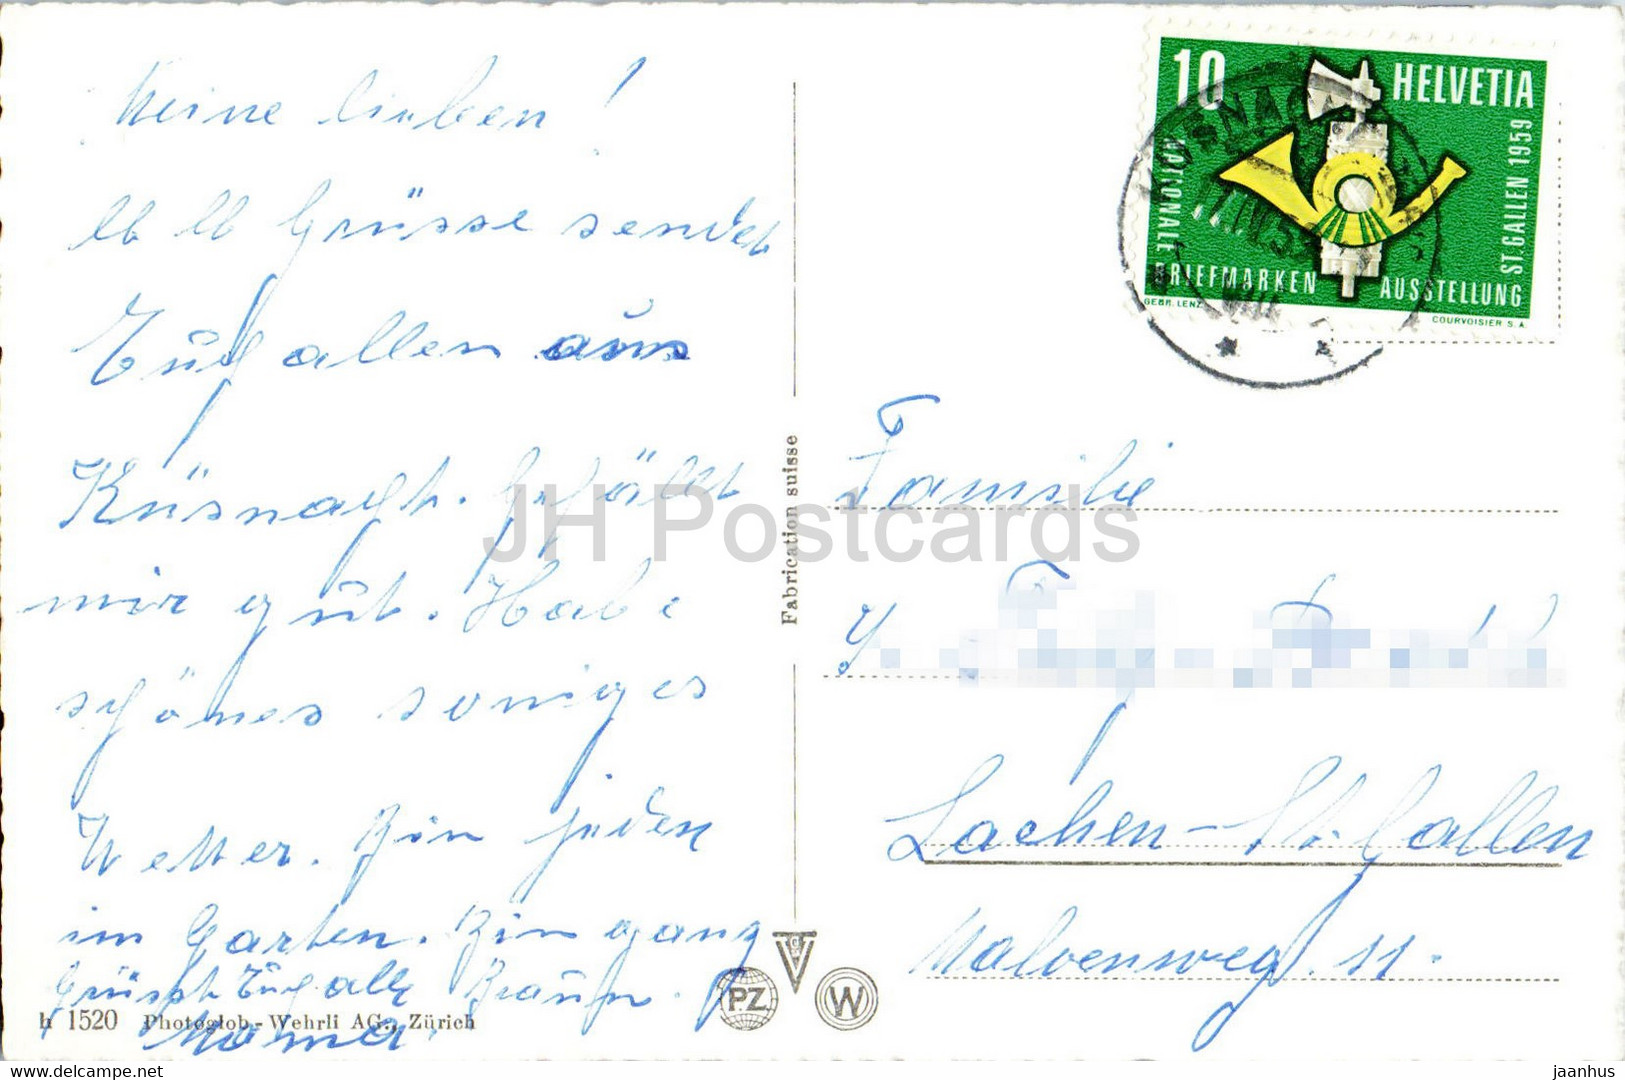 Kusnacht ZH - 1520 - 1959 - Old Postcard - Switzerland - Used - Küsnacht